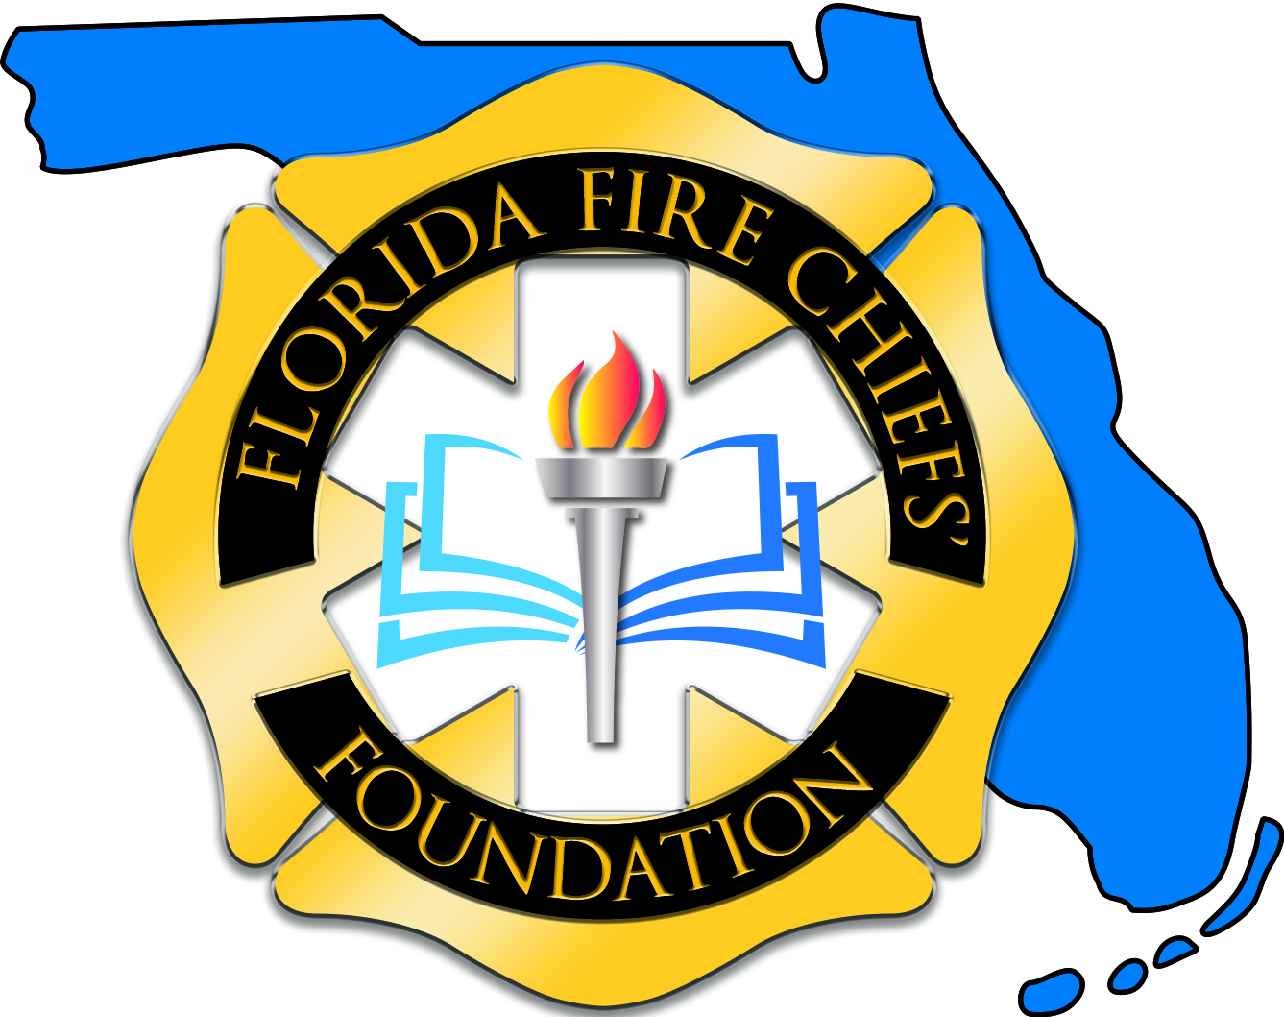 Florida Fire Chiefs' Foundation